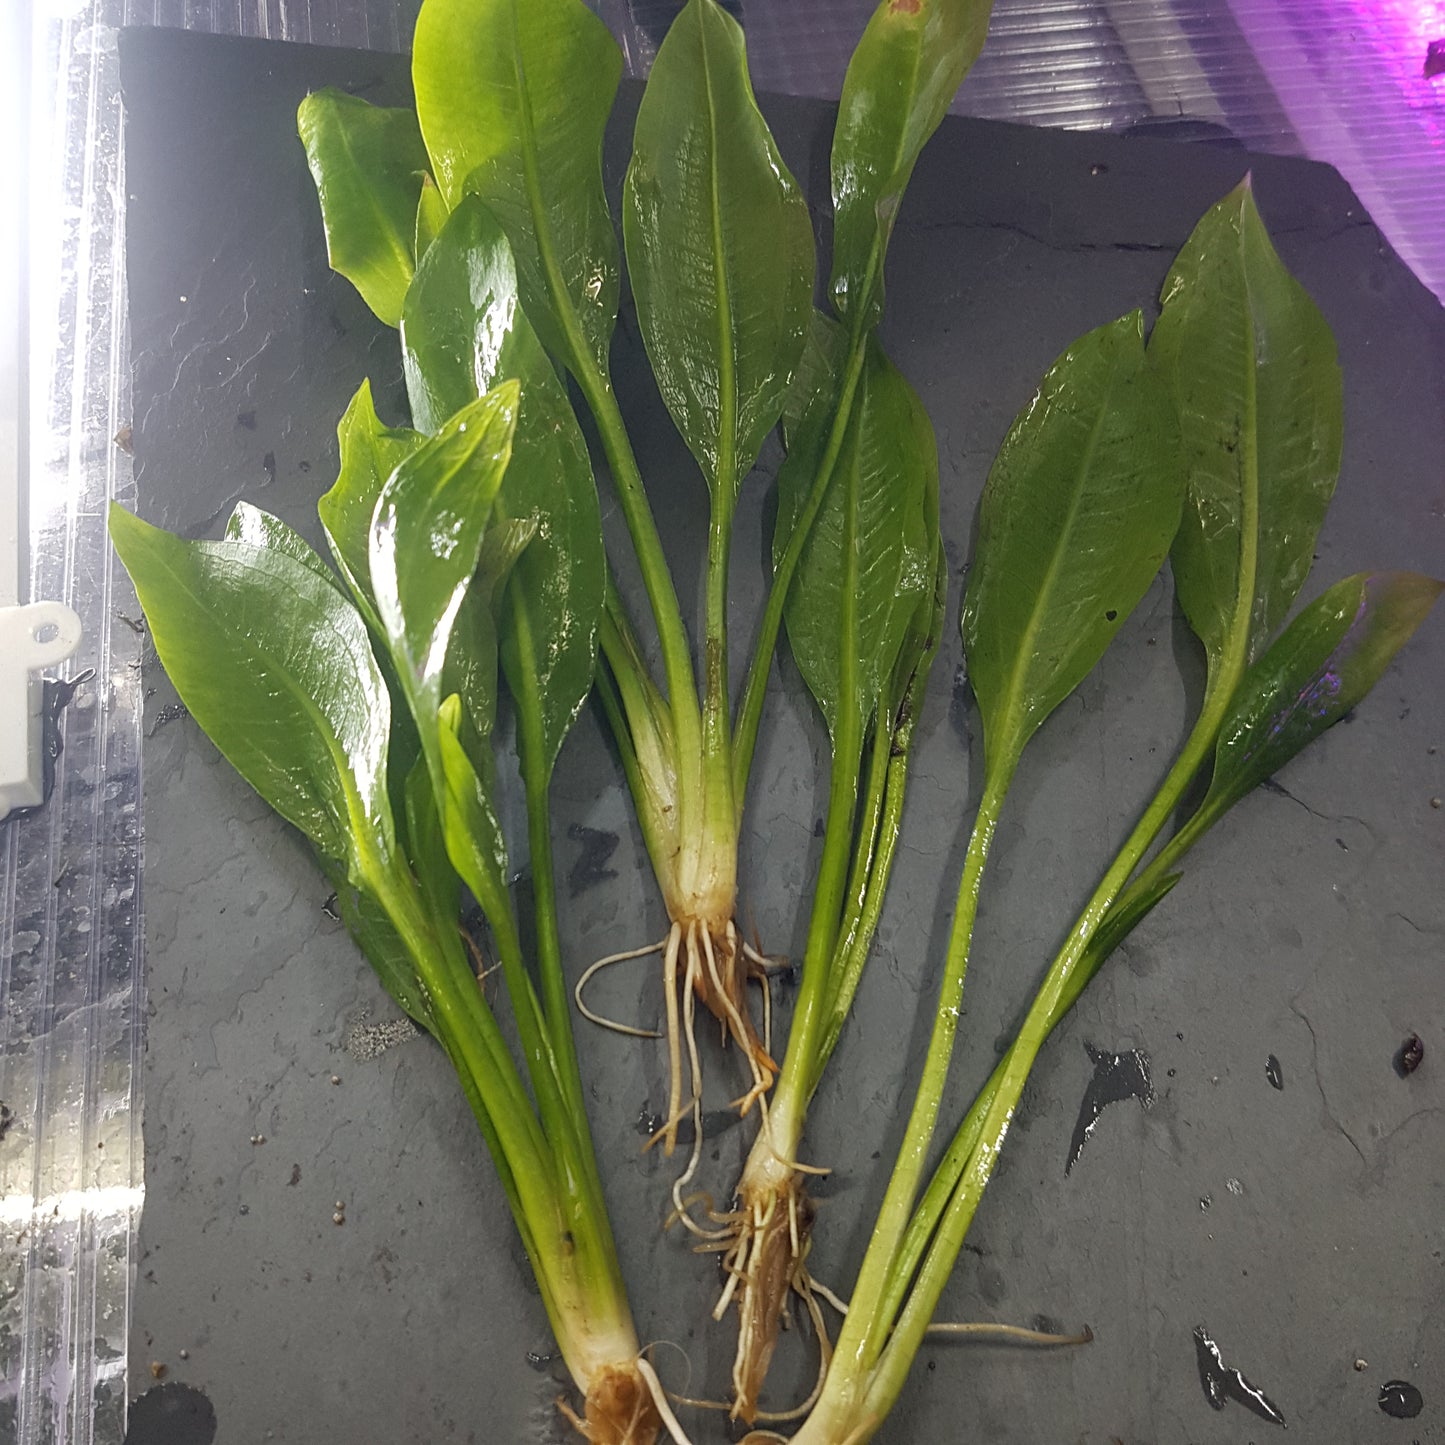 Echinodorus amazonicus (Amazon sword) - Bare root plant - 4x plants per bunch